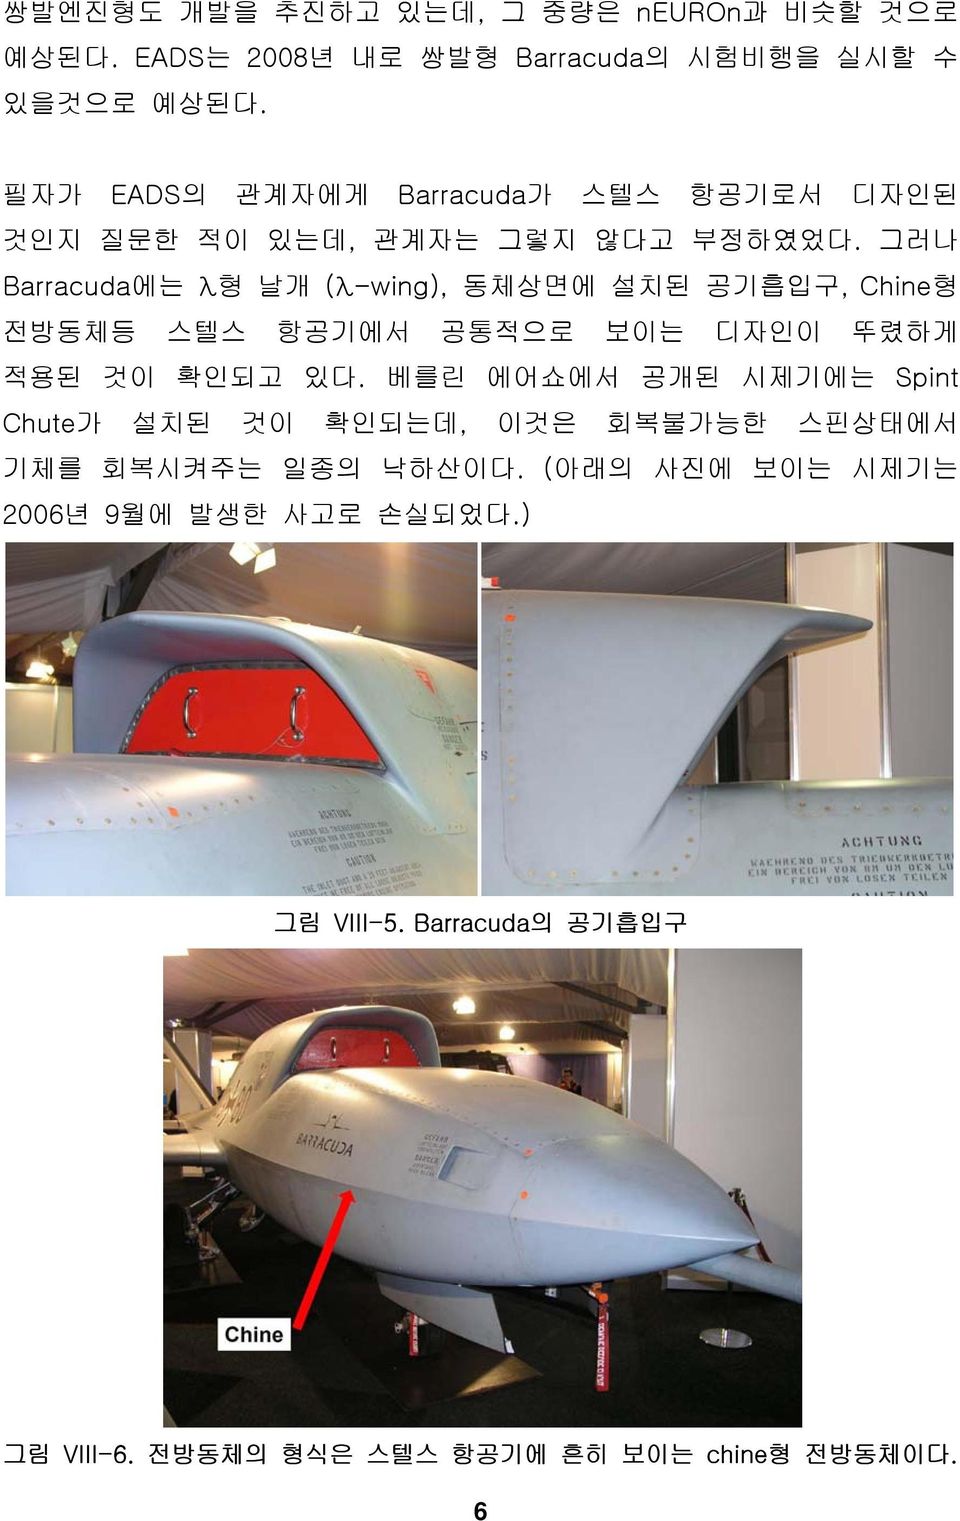 그러나 Barracuda에는 λ형 날개 (λ-wing), 동체상면에 설치된 공기흡입구, Chine형 전방동체등 스텔스 항공기에서 공통적으로 보이는 디자인이 뚜렸하게 적용된 것이 확인되고 있다.